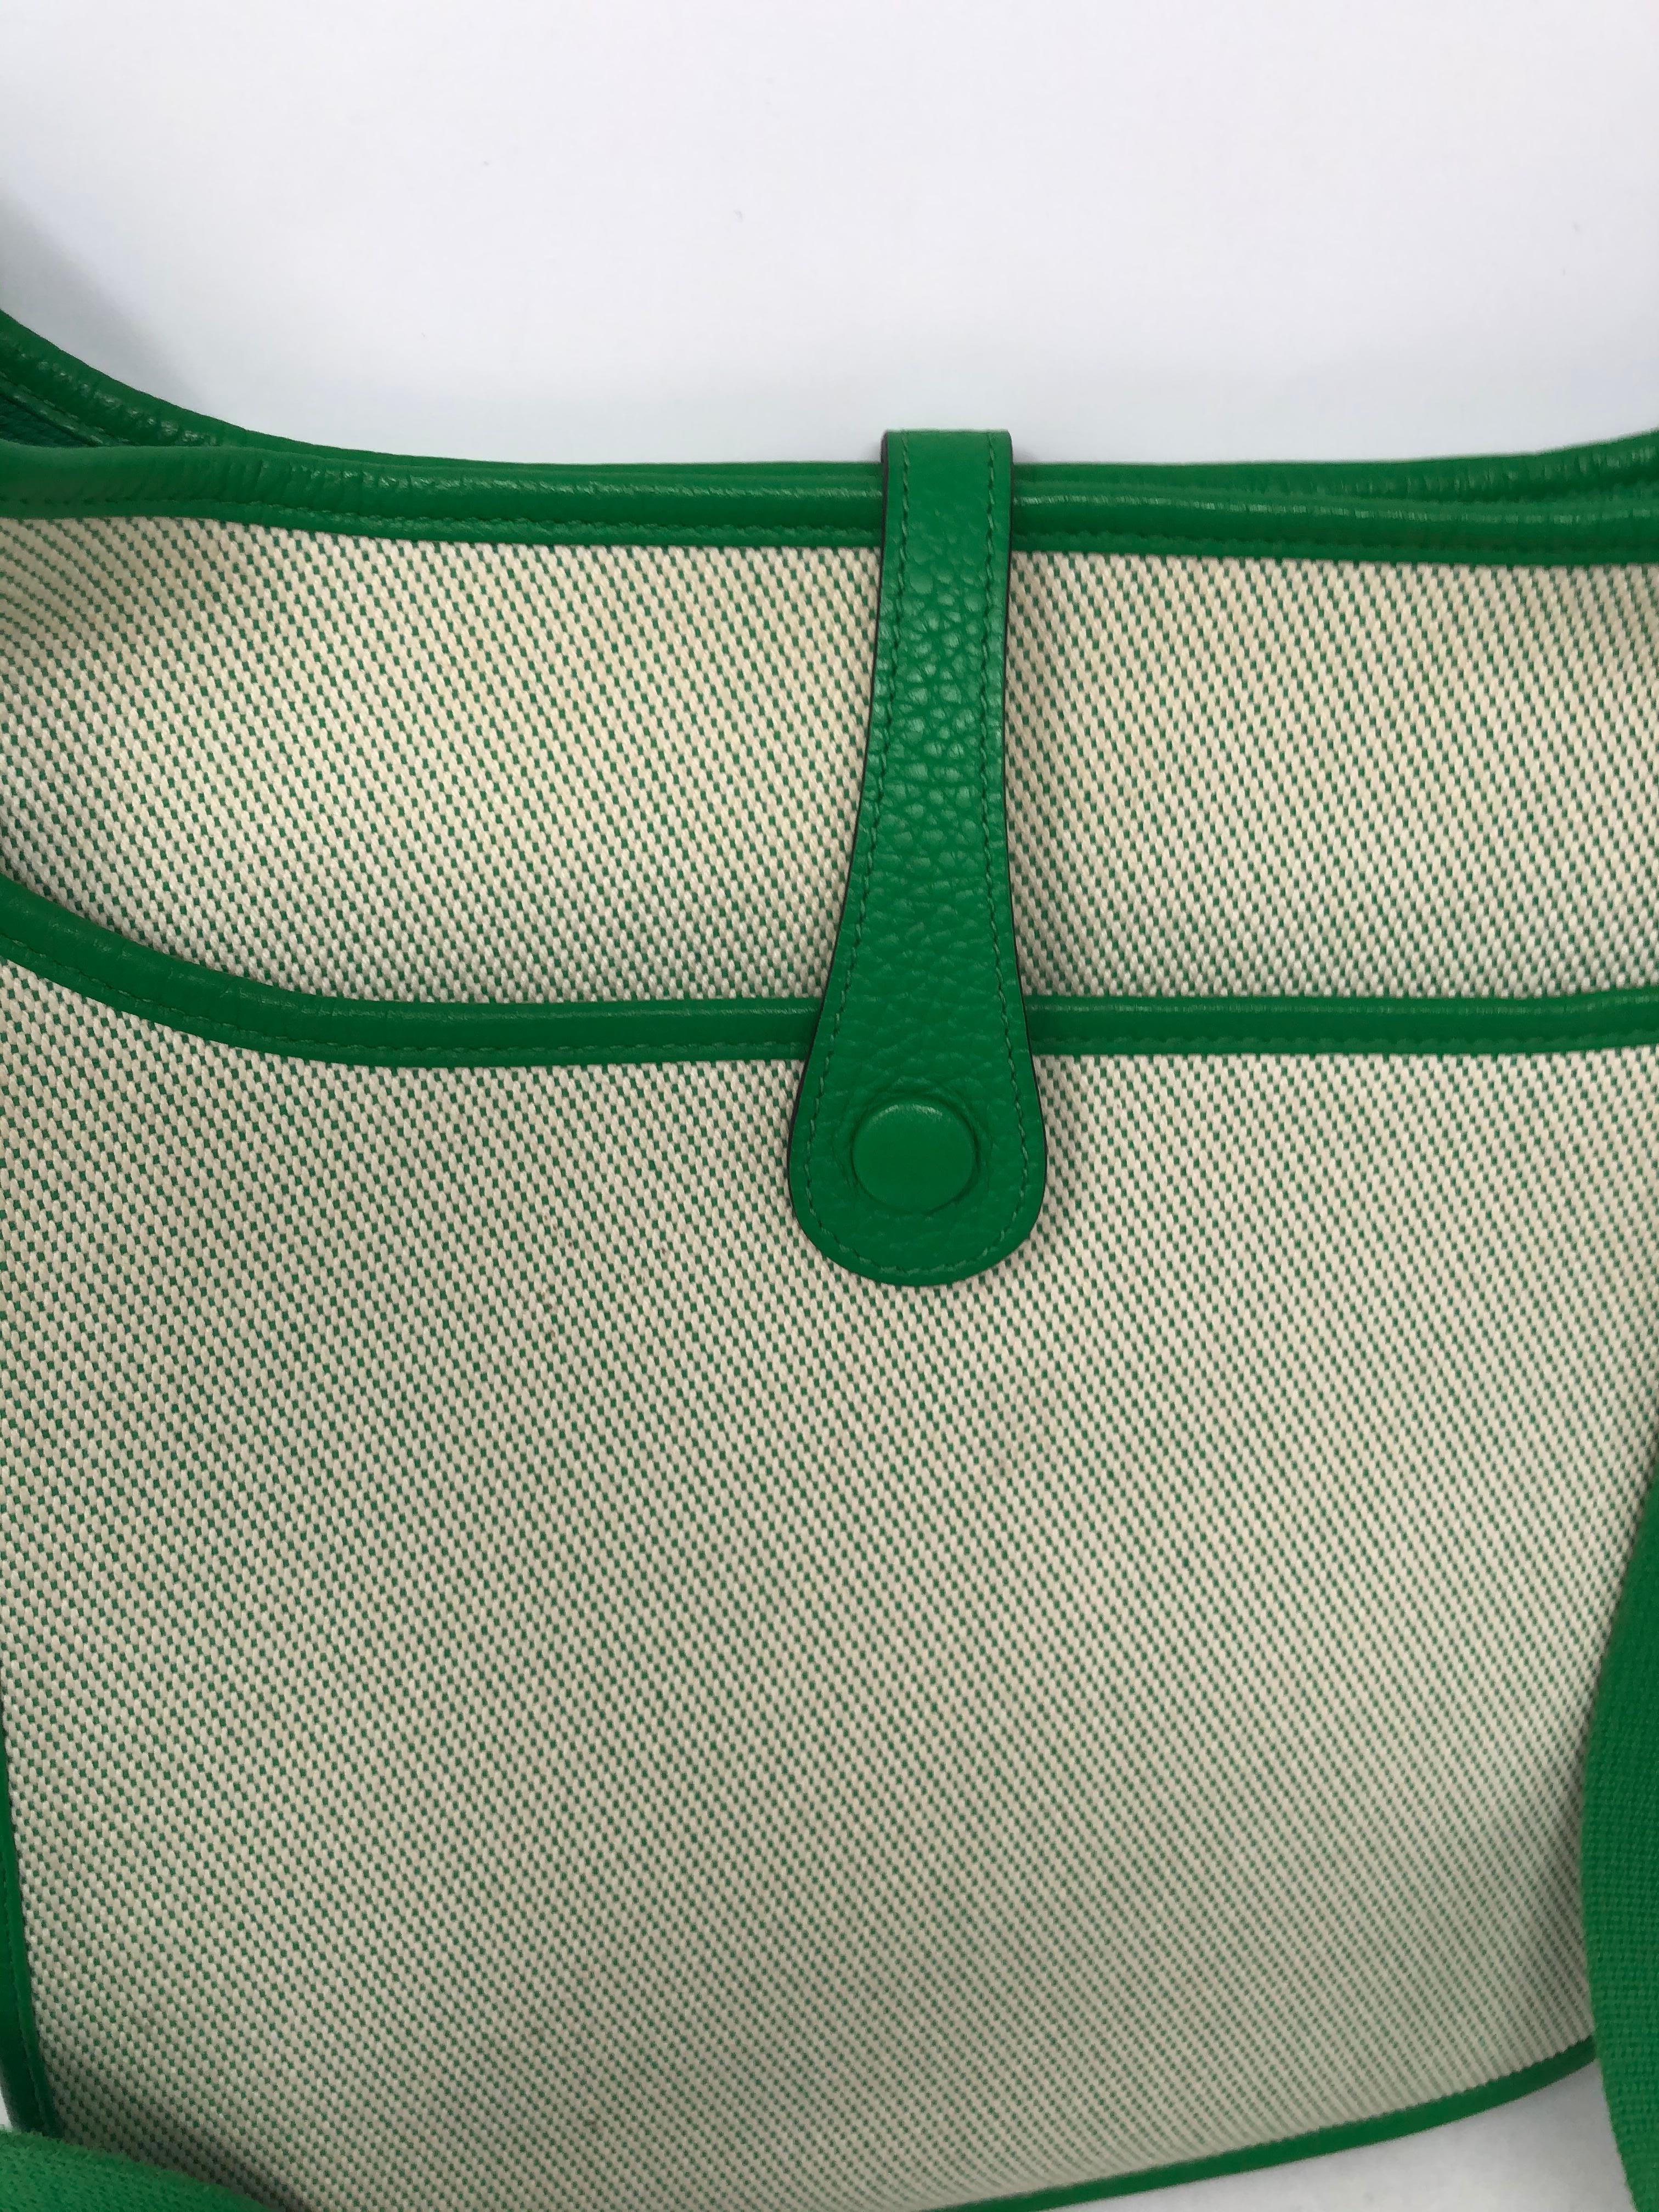 Hermes Green Evelyne Bag  7